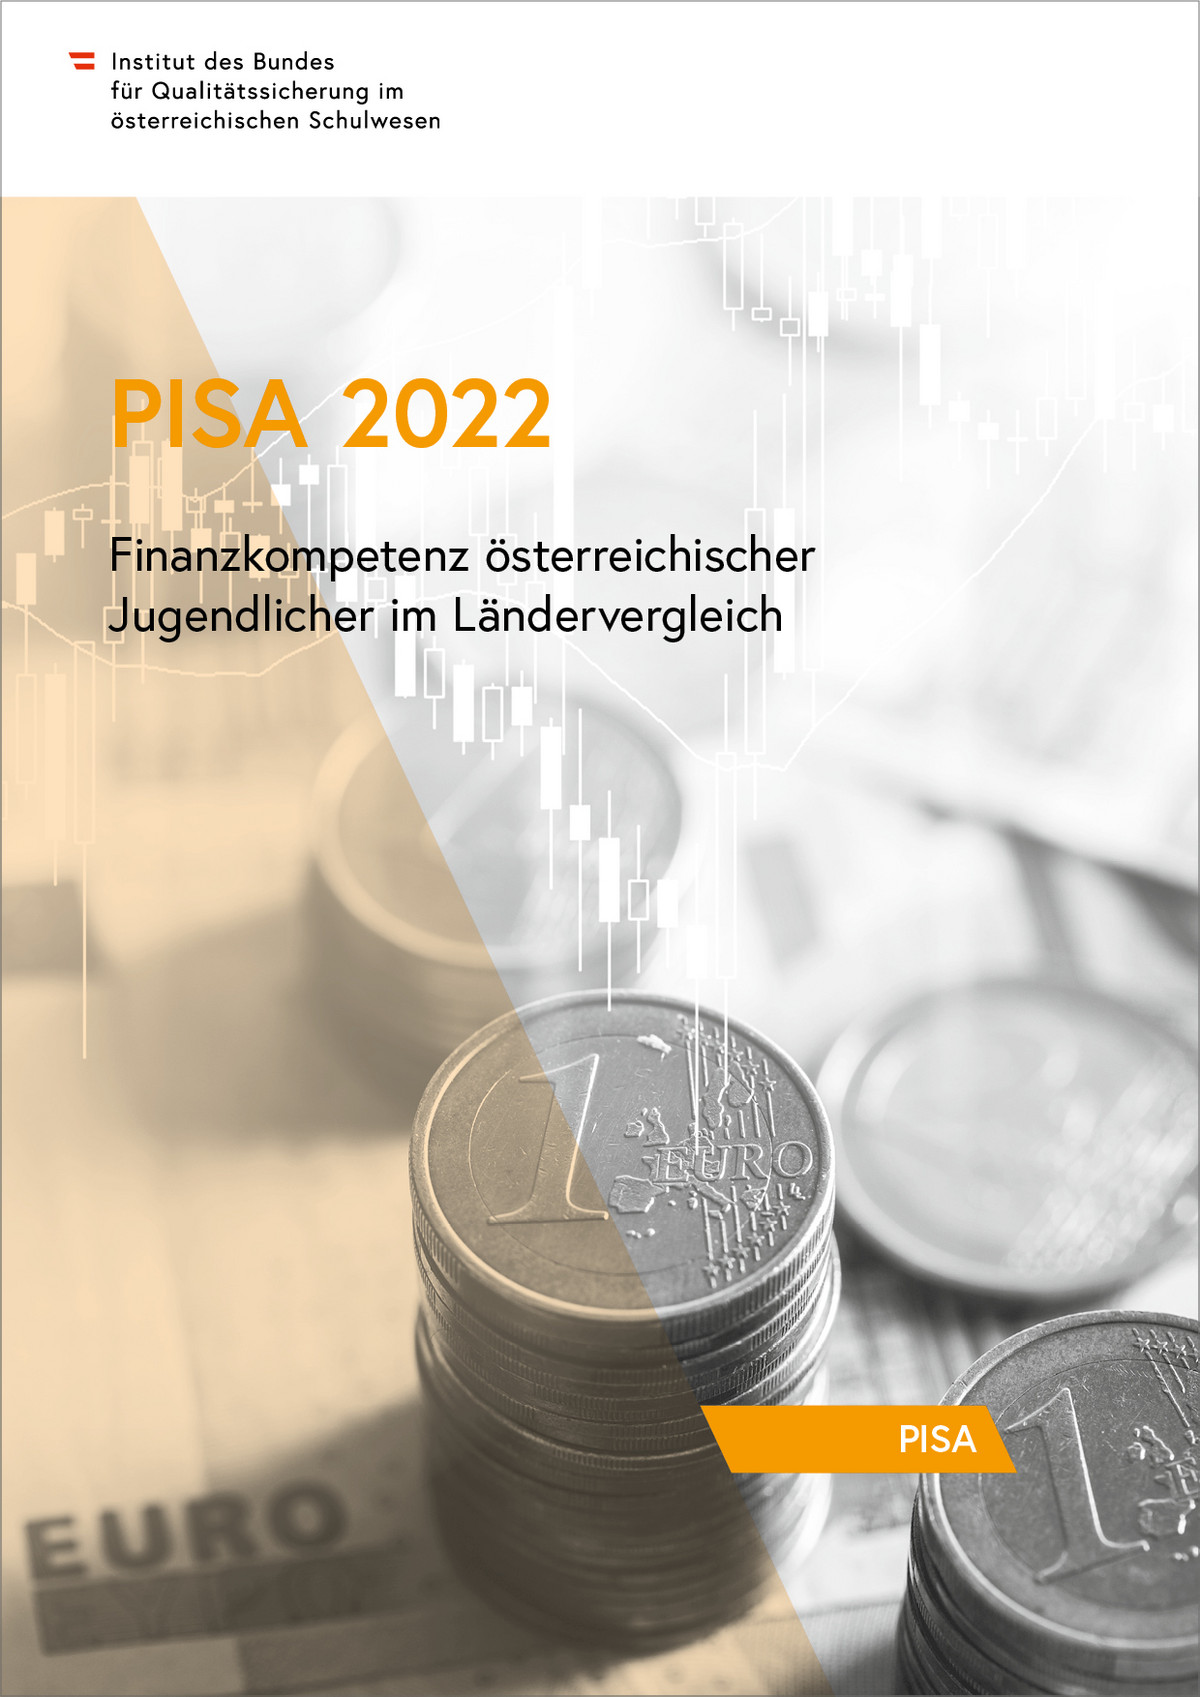 Die Abbildung zeigt den Einband der Publikation "PISA 2022 - Finanzkompetenz österreichischer Jugendlicher im Ländervergleich".